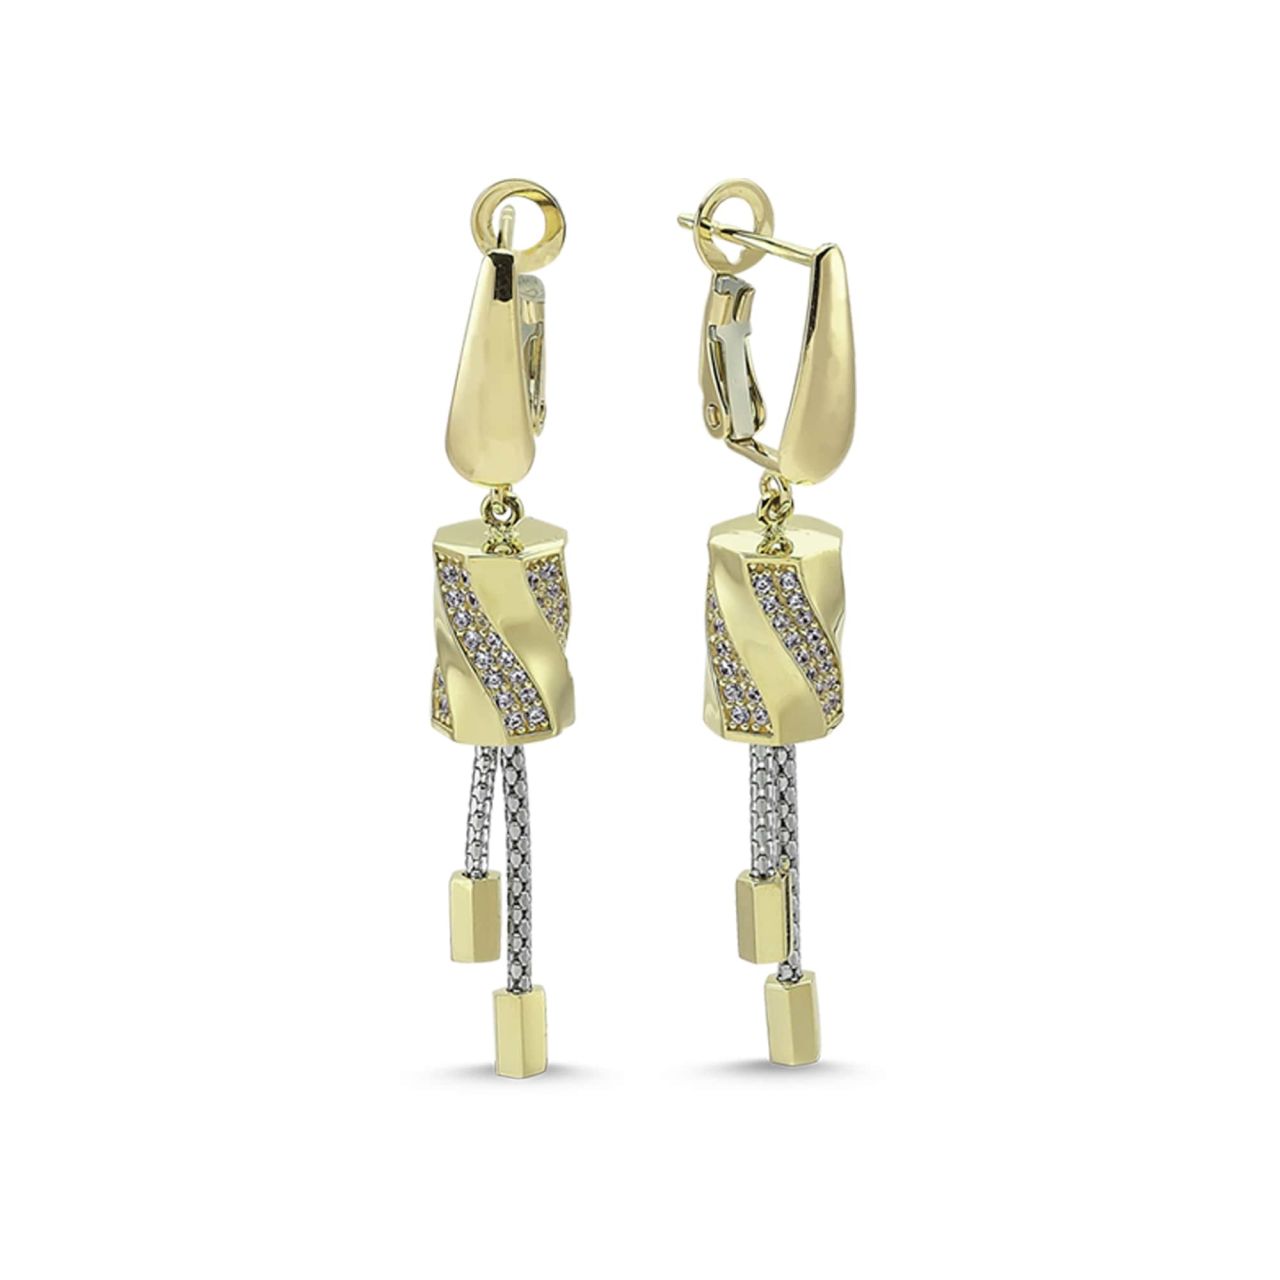 TSE 2098 is 7.80g Gold Earrings